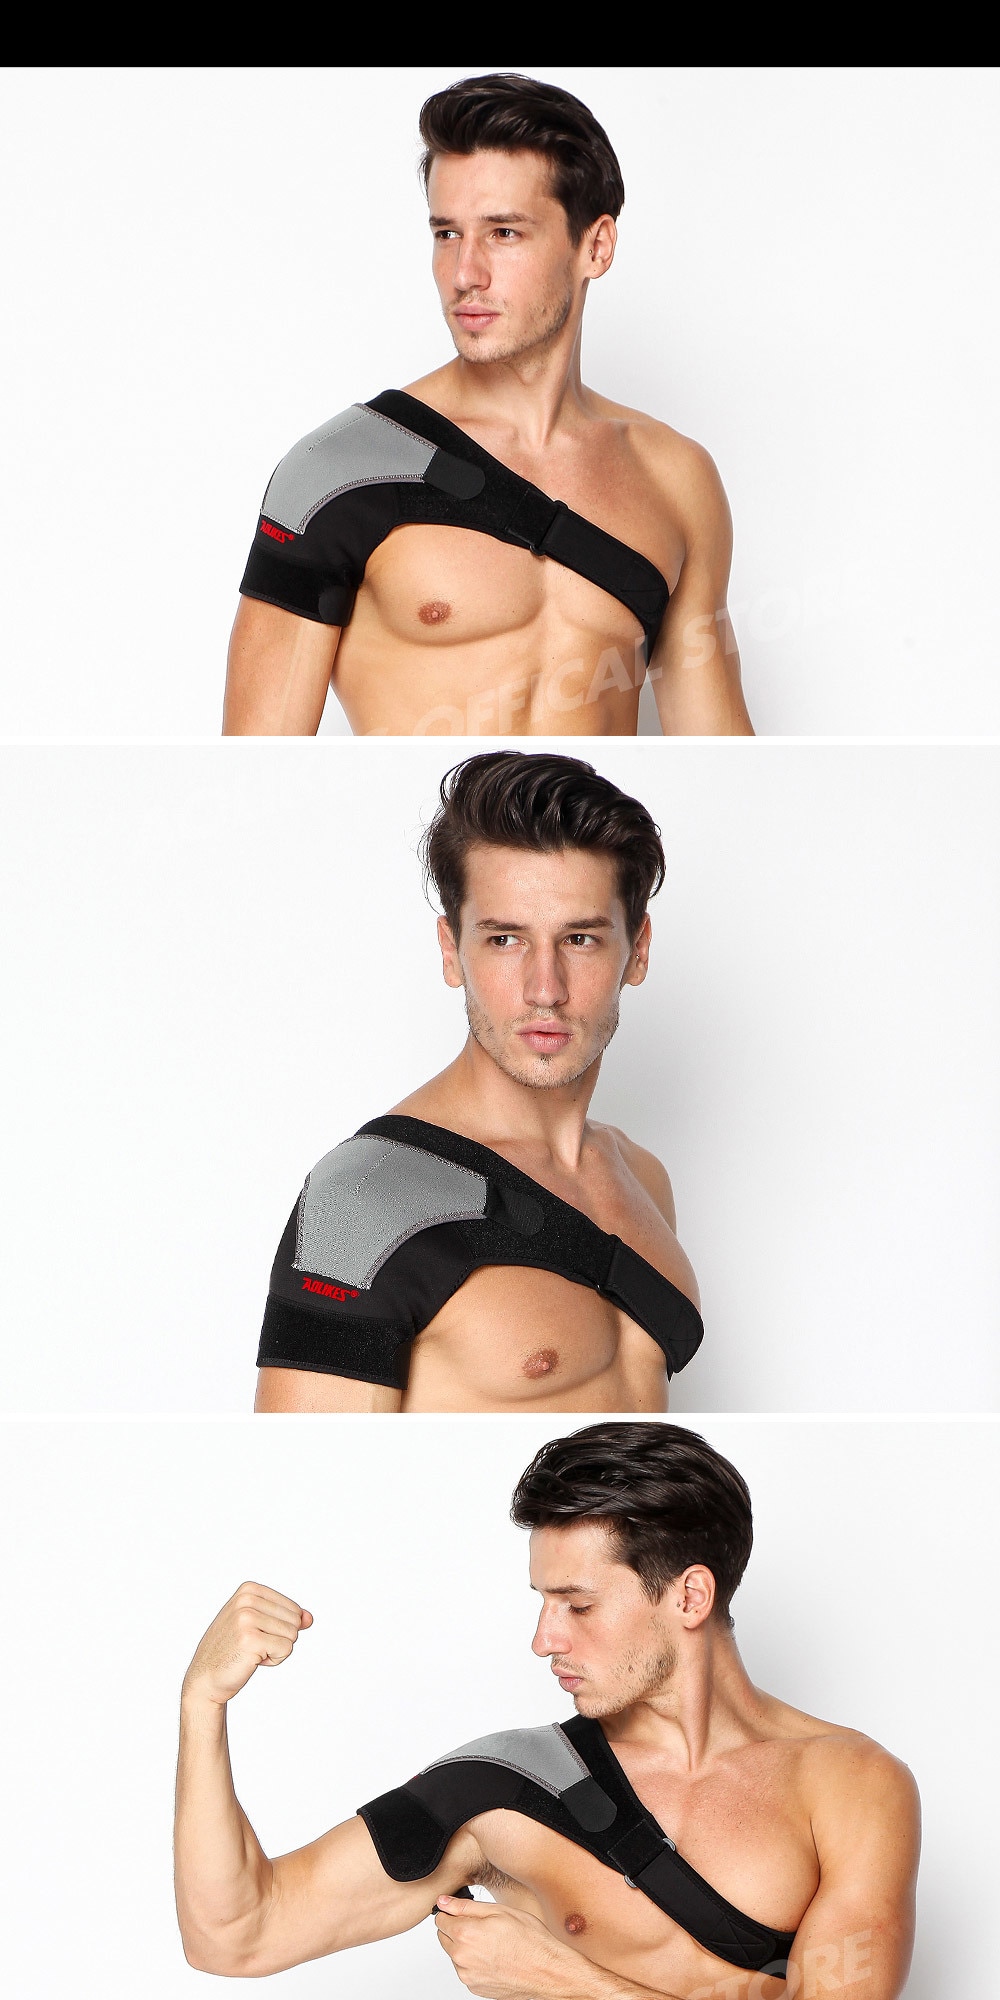 Adjustable Breathable Gym Sports Care Single Shoulder Support Back Brace Guard Strap Wrap Belt Band Pads Black Bandage Men&Women